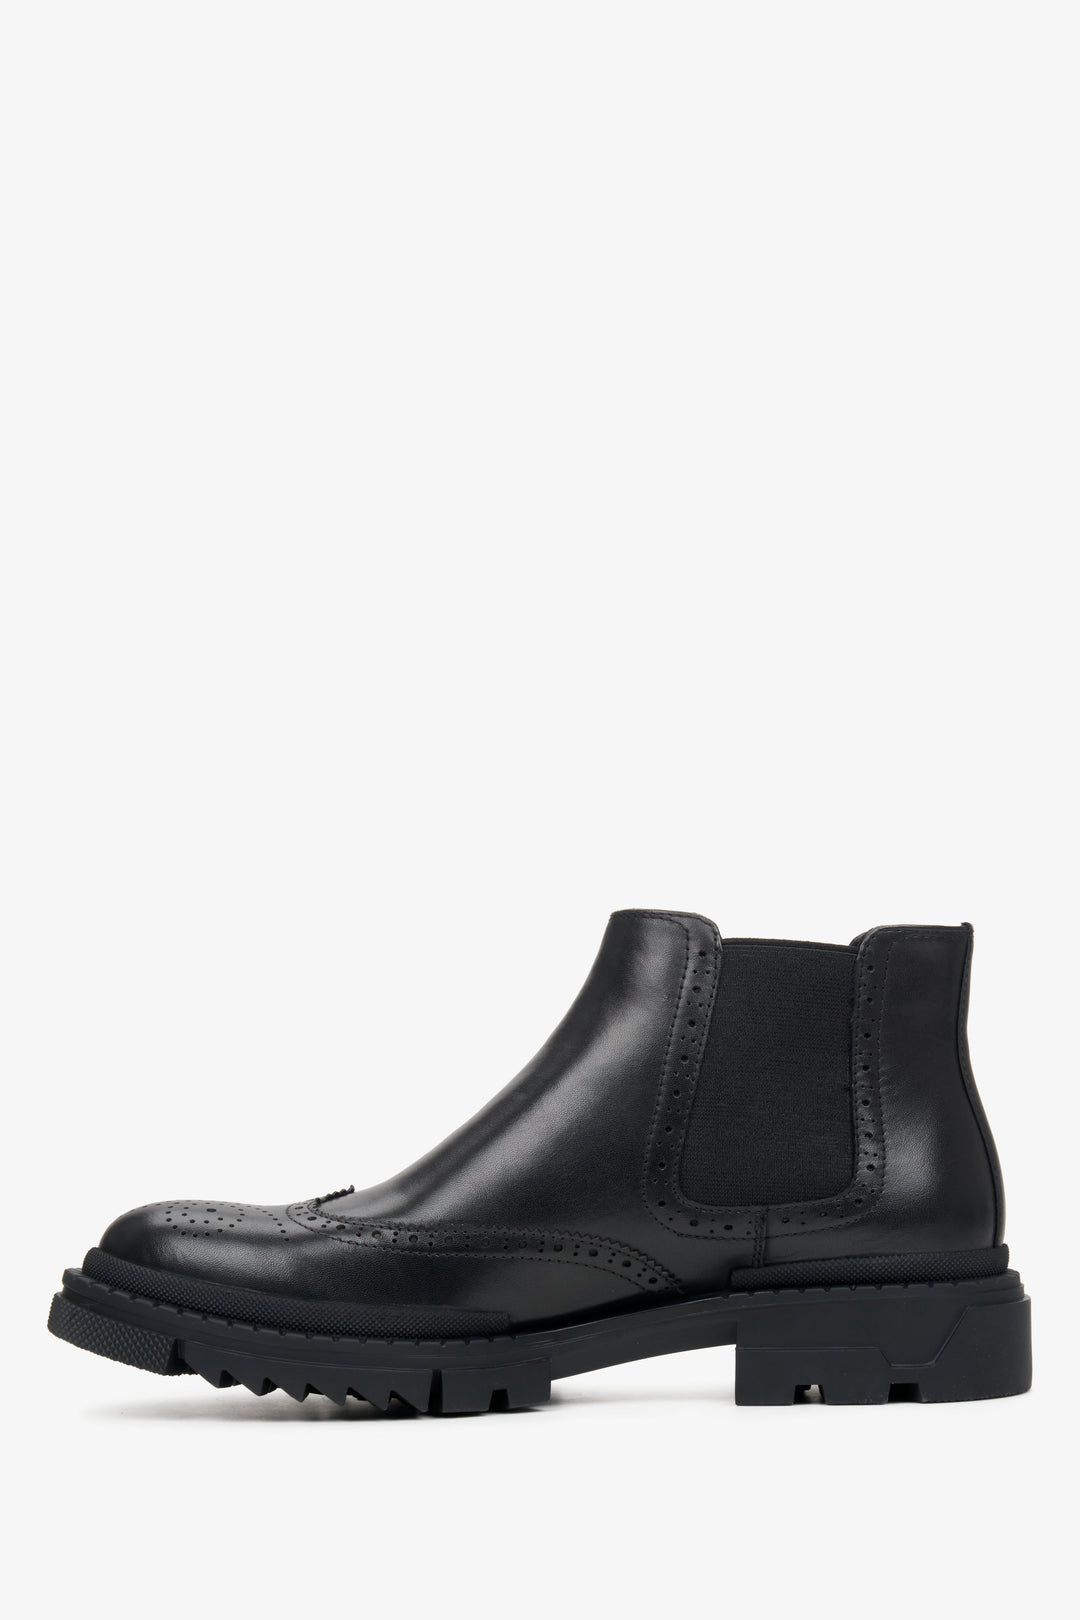 Men's low black leather ankle boots by Estro - shoe profile.